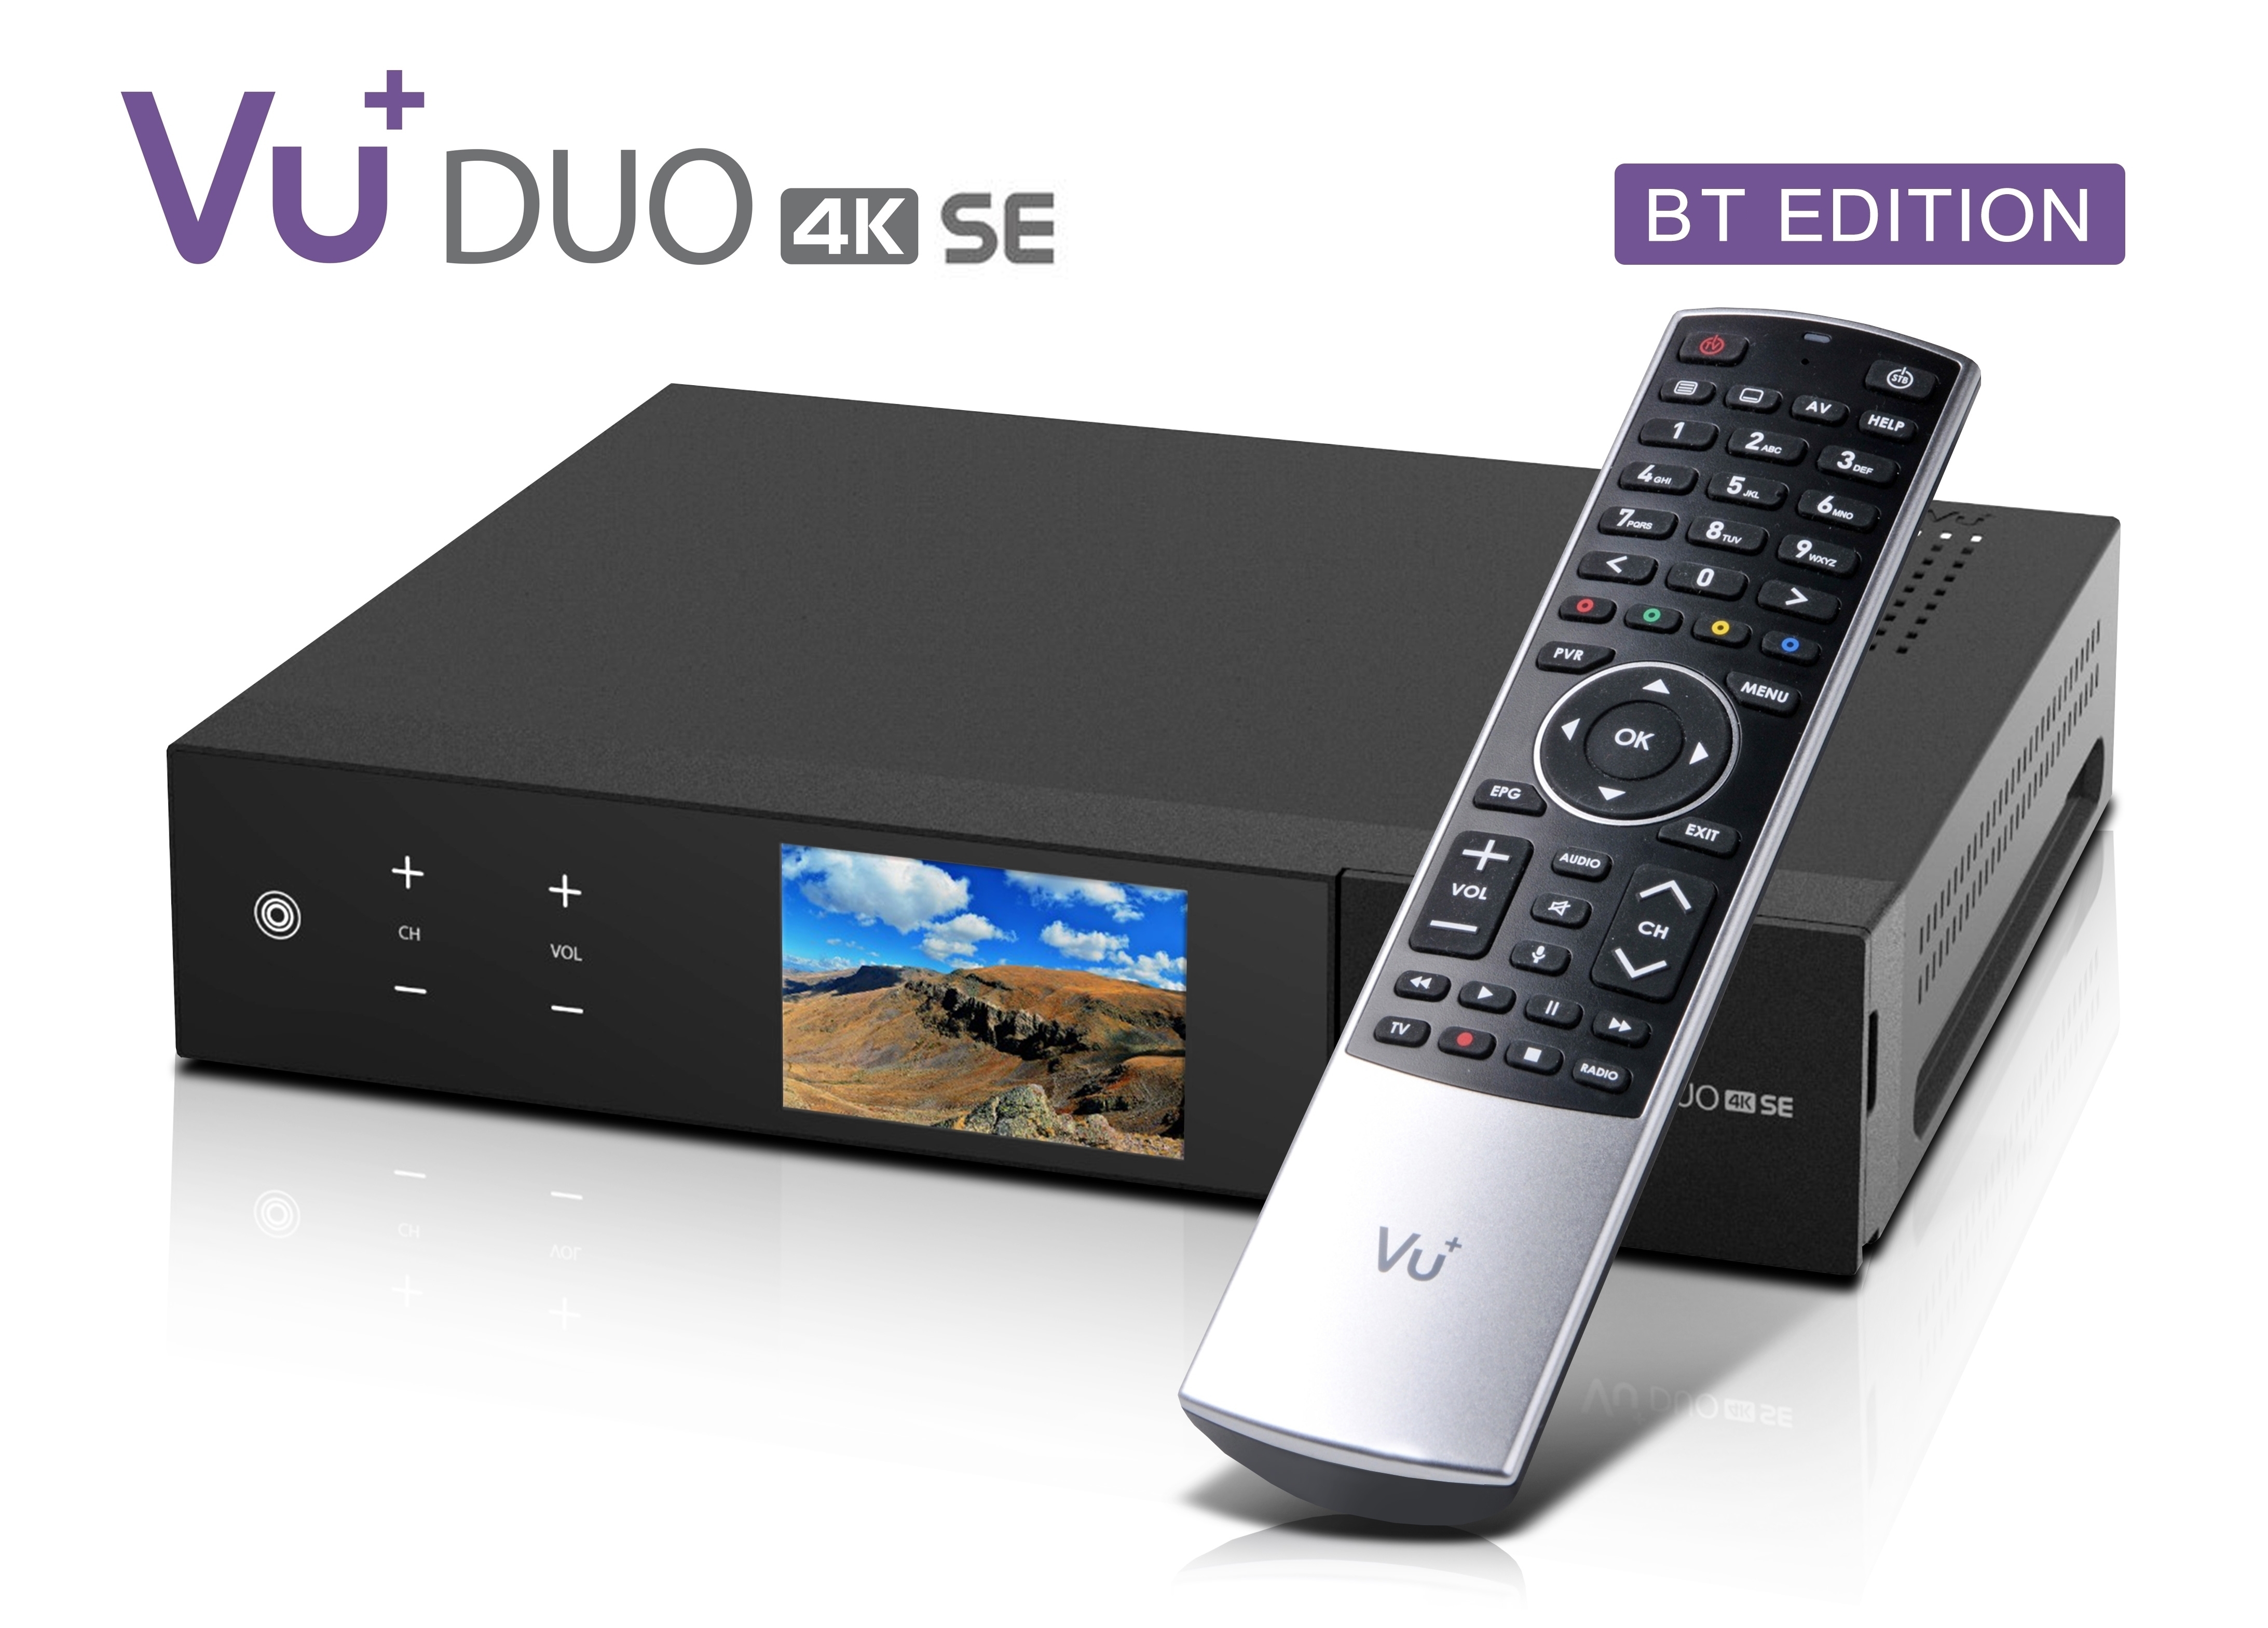 VU+ Duo 4K SE BT 1x DVB-S2X FBC Twin Tuner 2 TB HDD Linux Receiver UHD 2160p